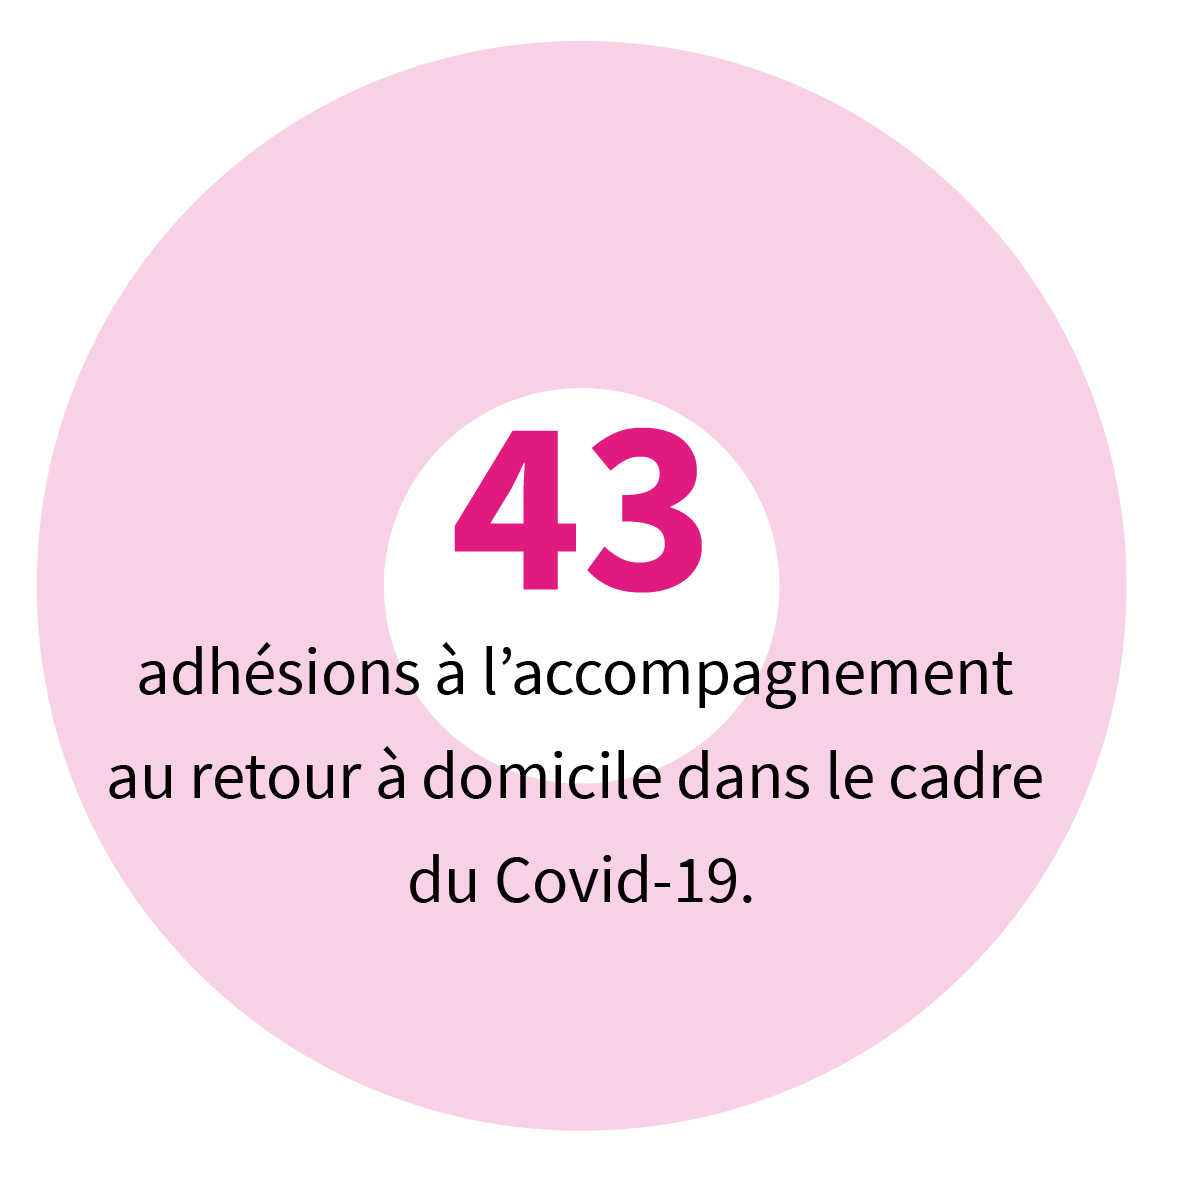 43 adhésions à l’accompagnement au retour à domicile dans le cadre du Covid-19.